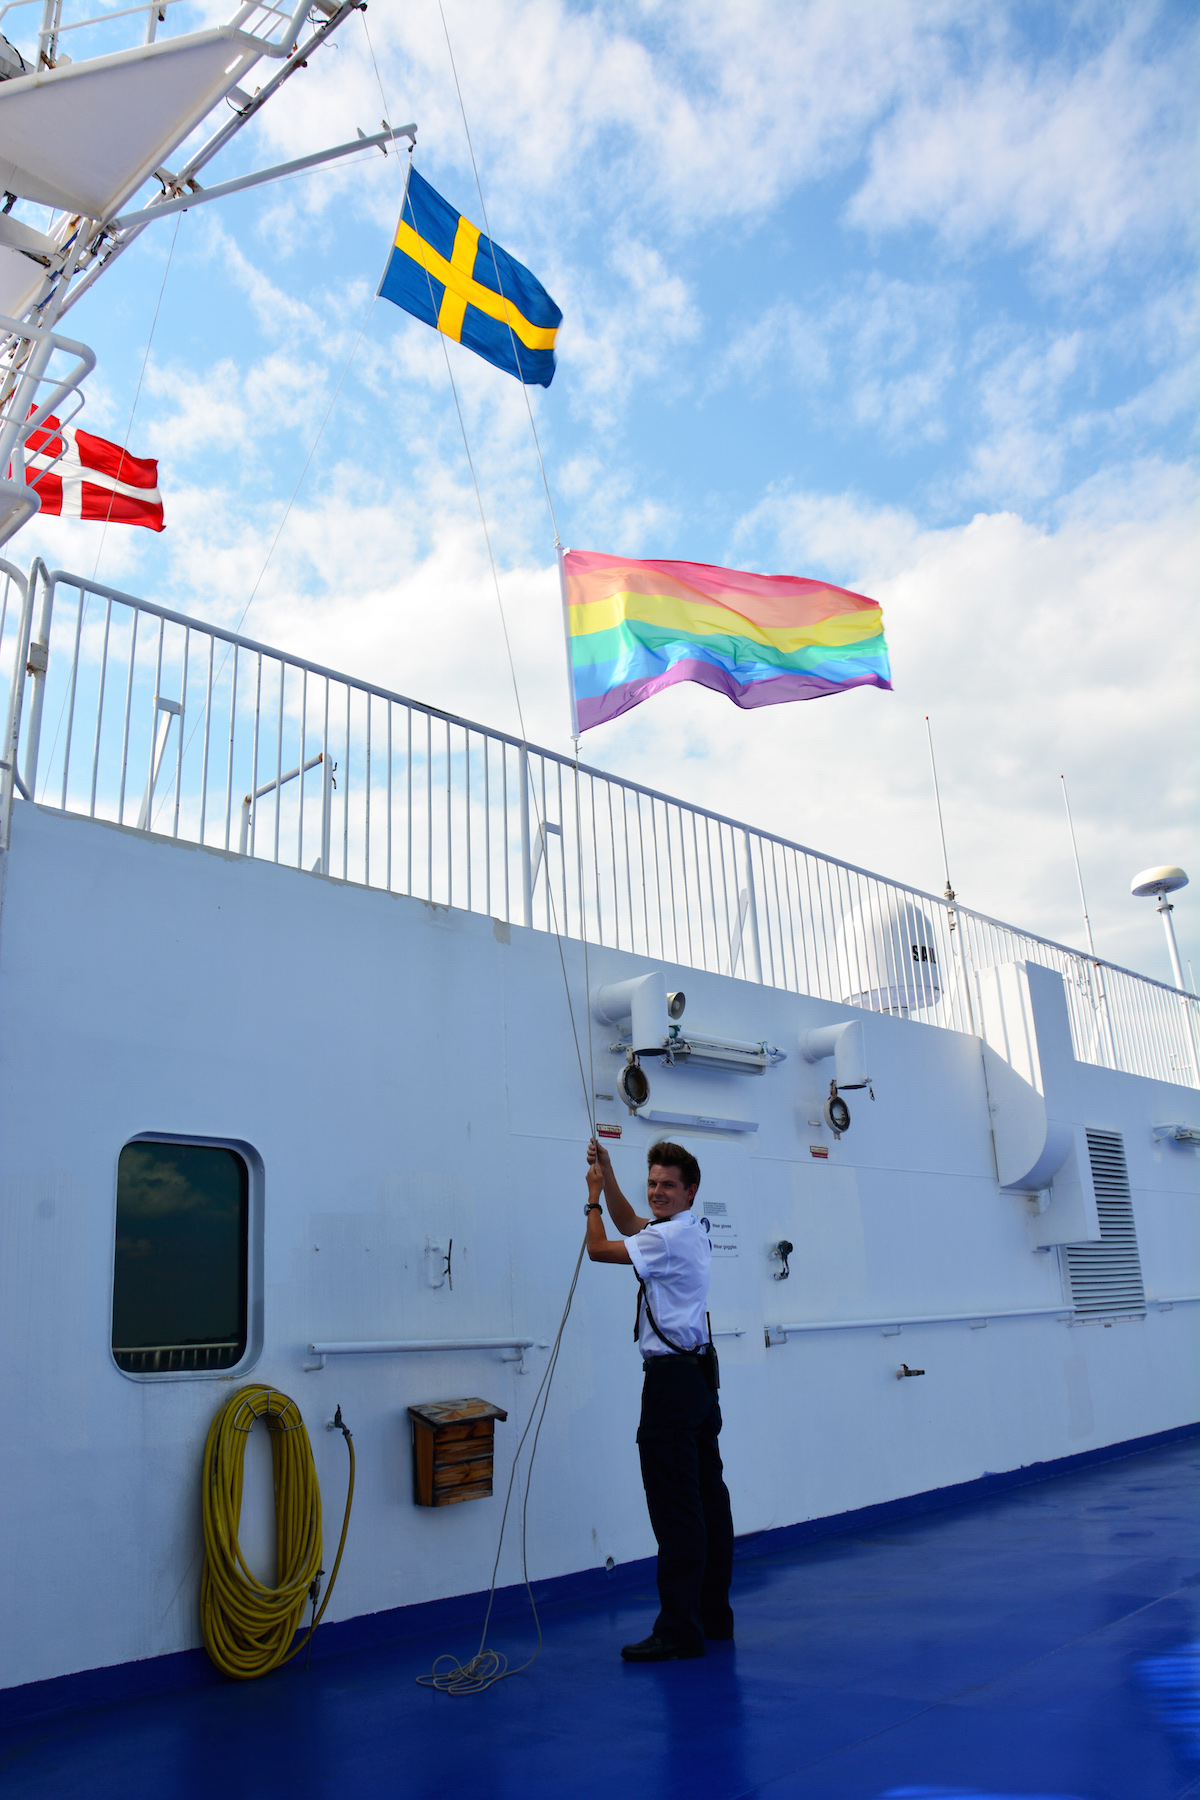 Regenbogenflagge auf Fähre der Reederei Stena Line